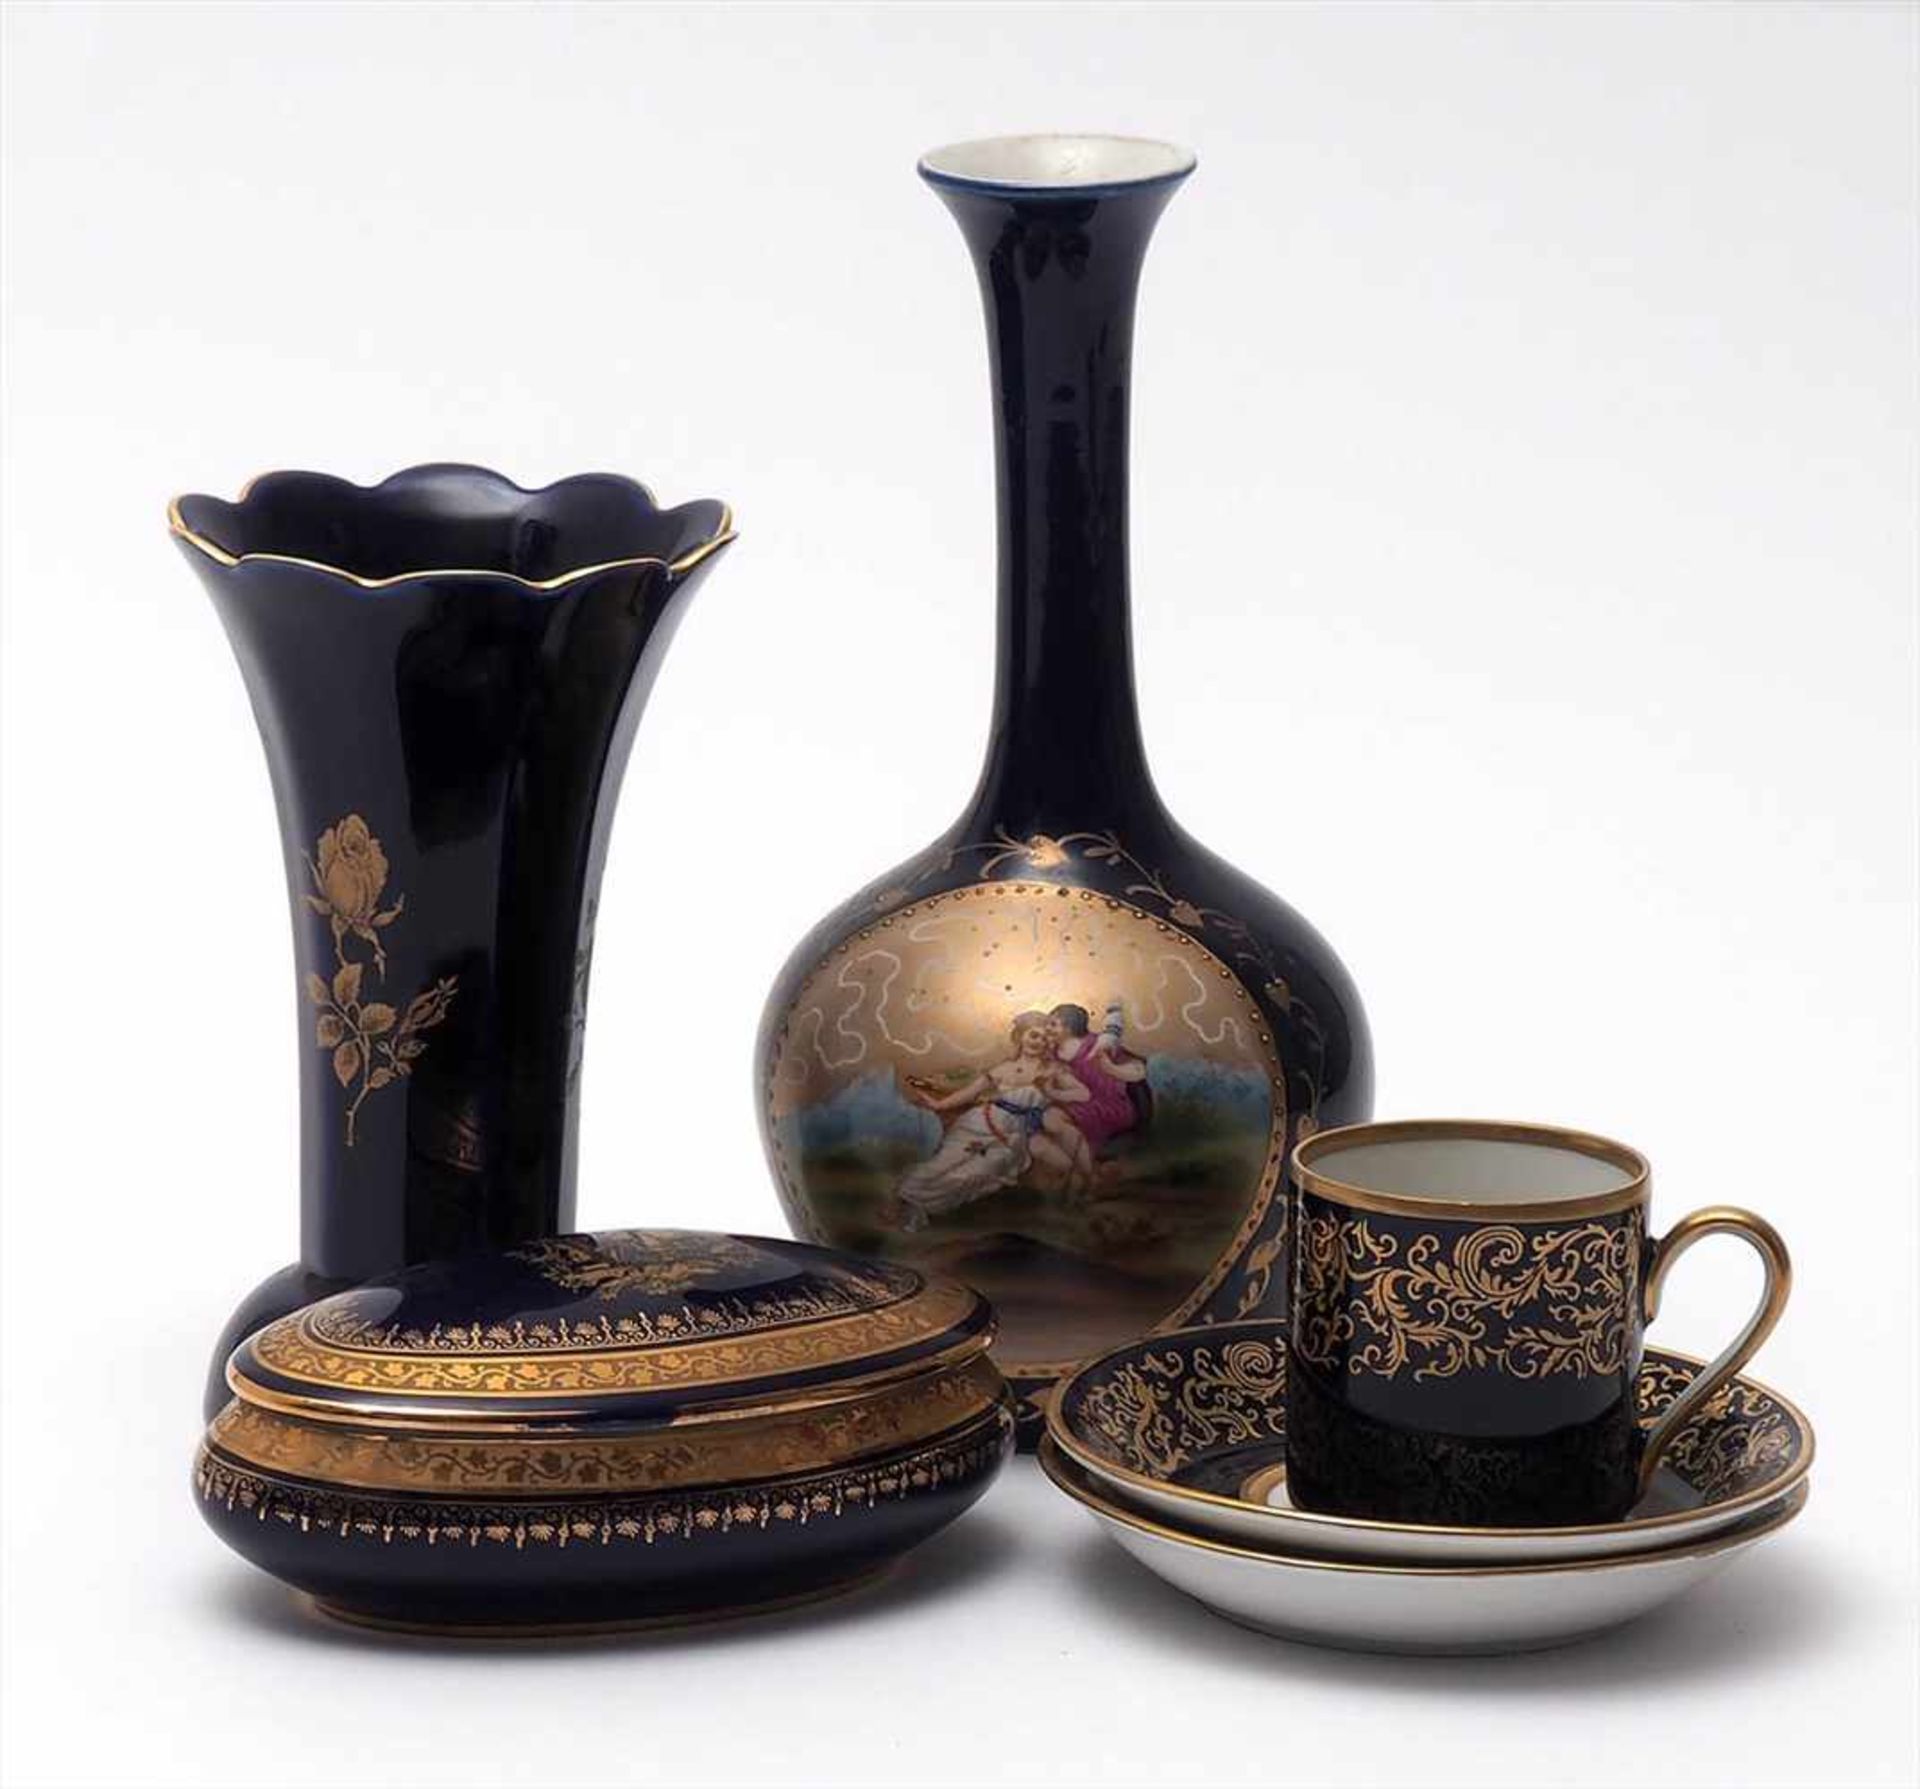 Sechs Teile Porzellan, kobaltblauZwei Vasen, eine keulenförmig (H.20,5cm), eine mit ausgestelltem,